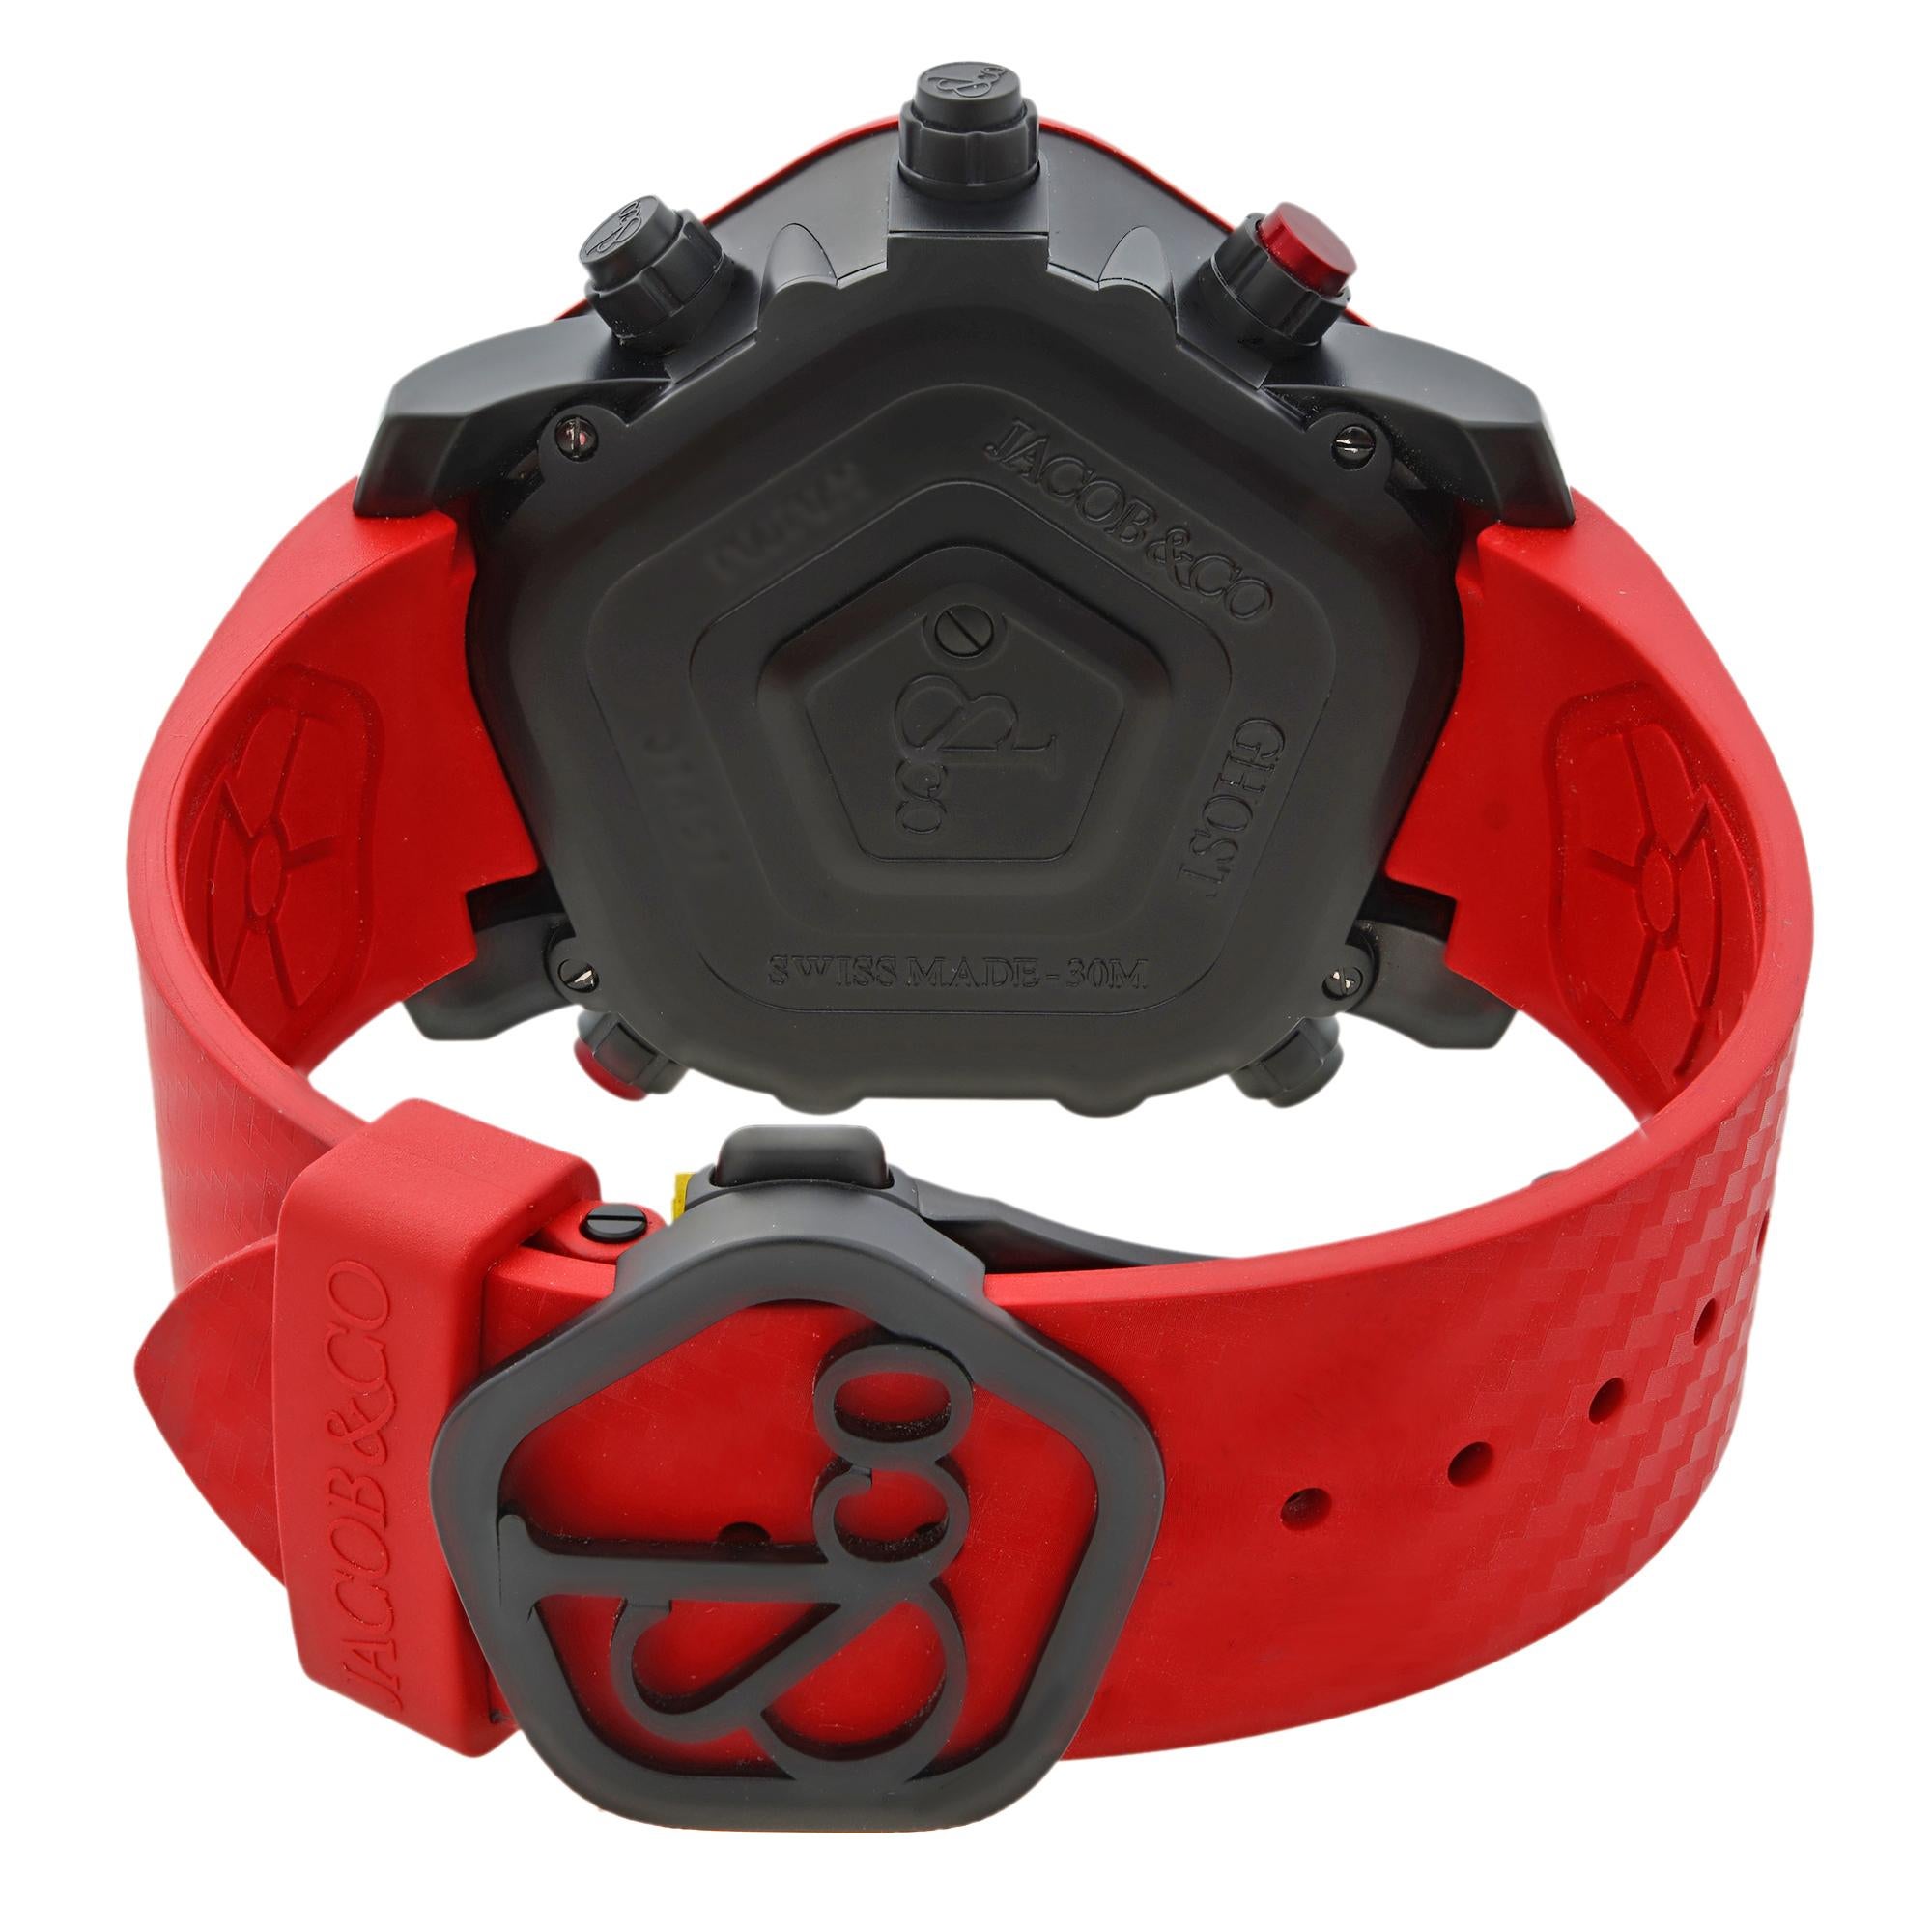 Jacob & Co. Ghost Carbon Bezel Red Quartz Men's Watch GH100.11.NS.PC.ANA4D 2